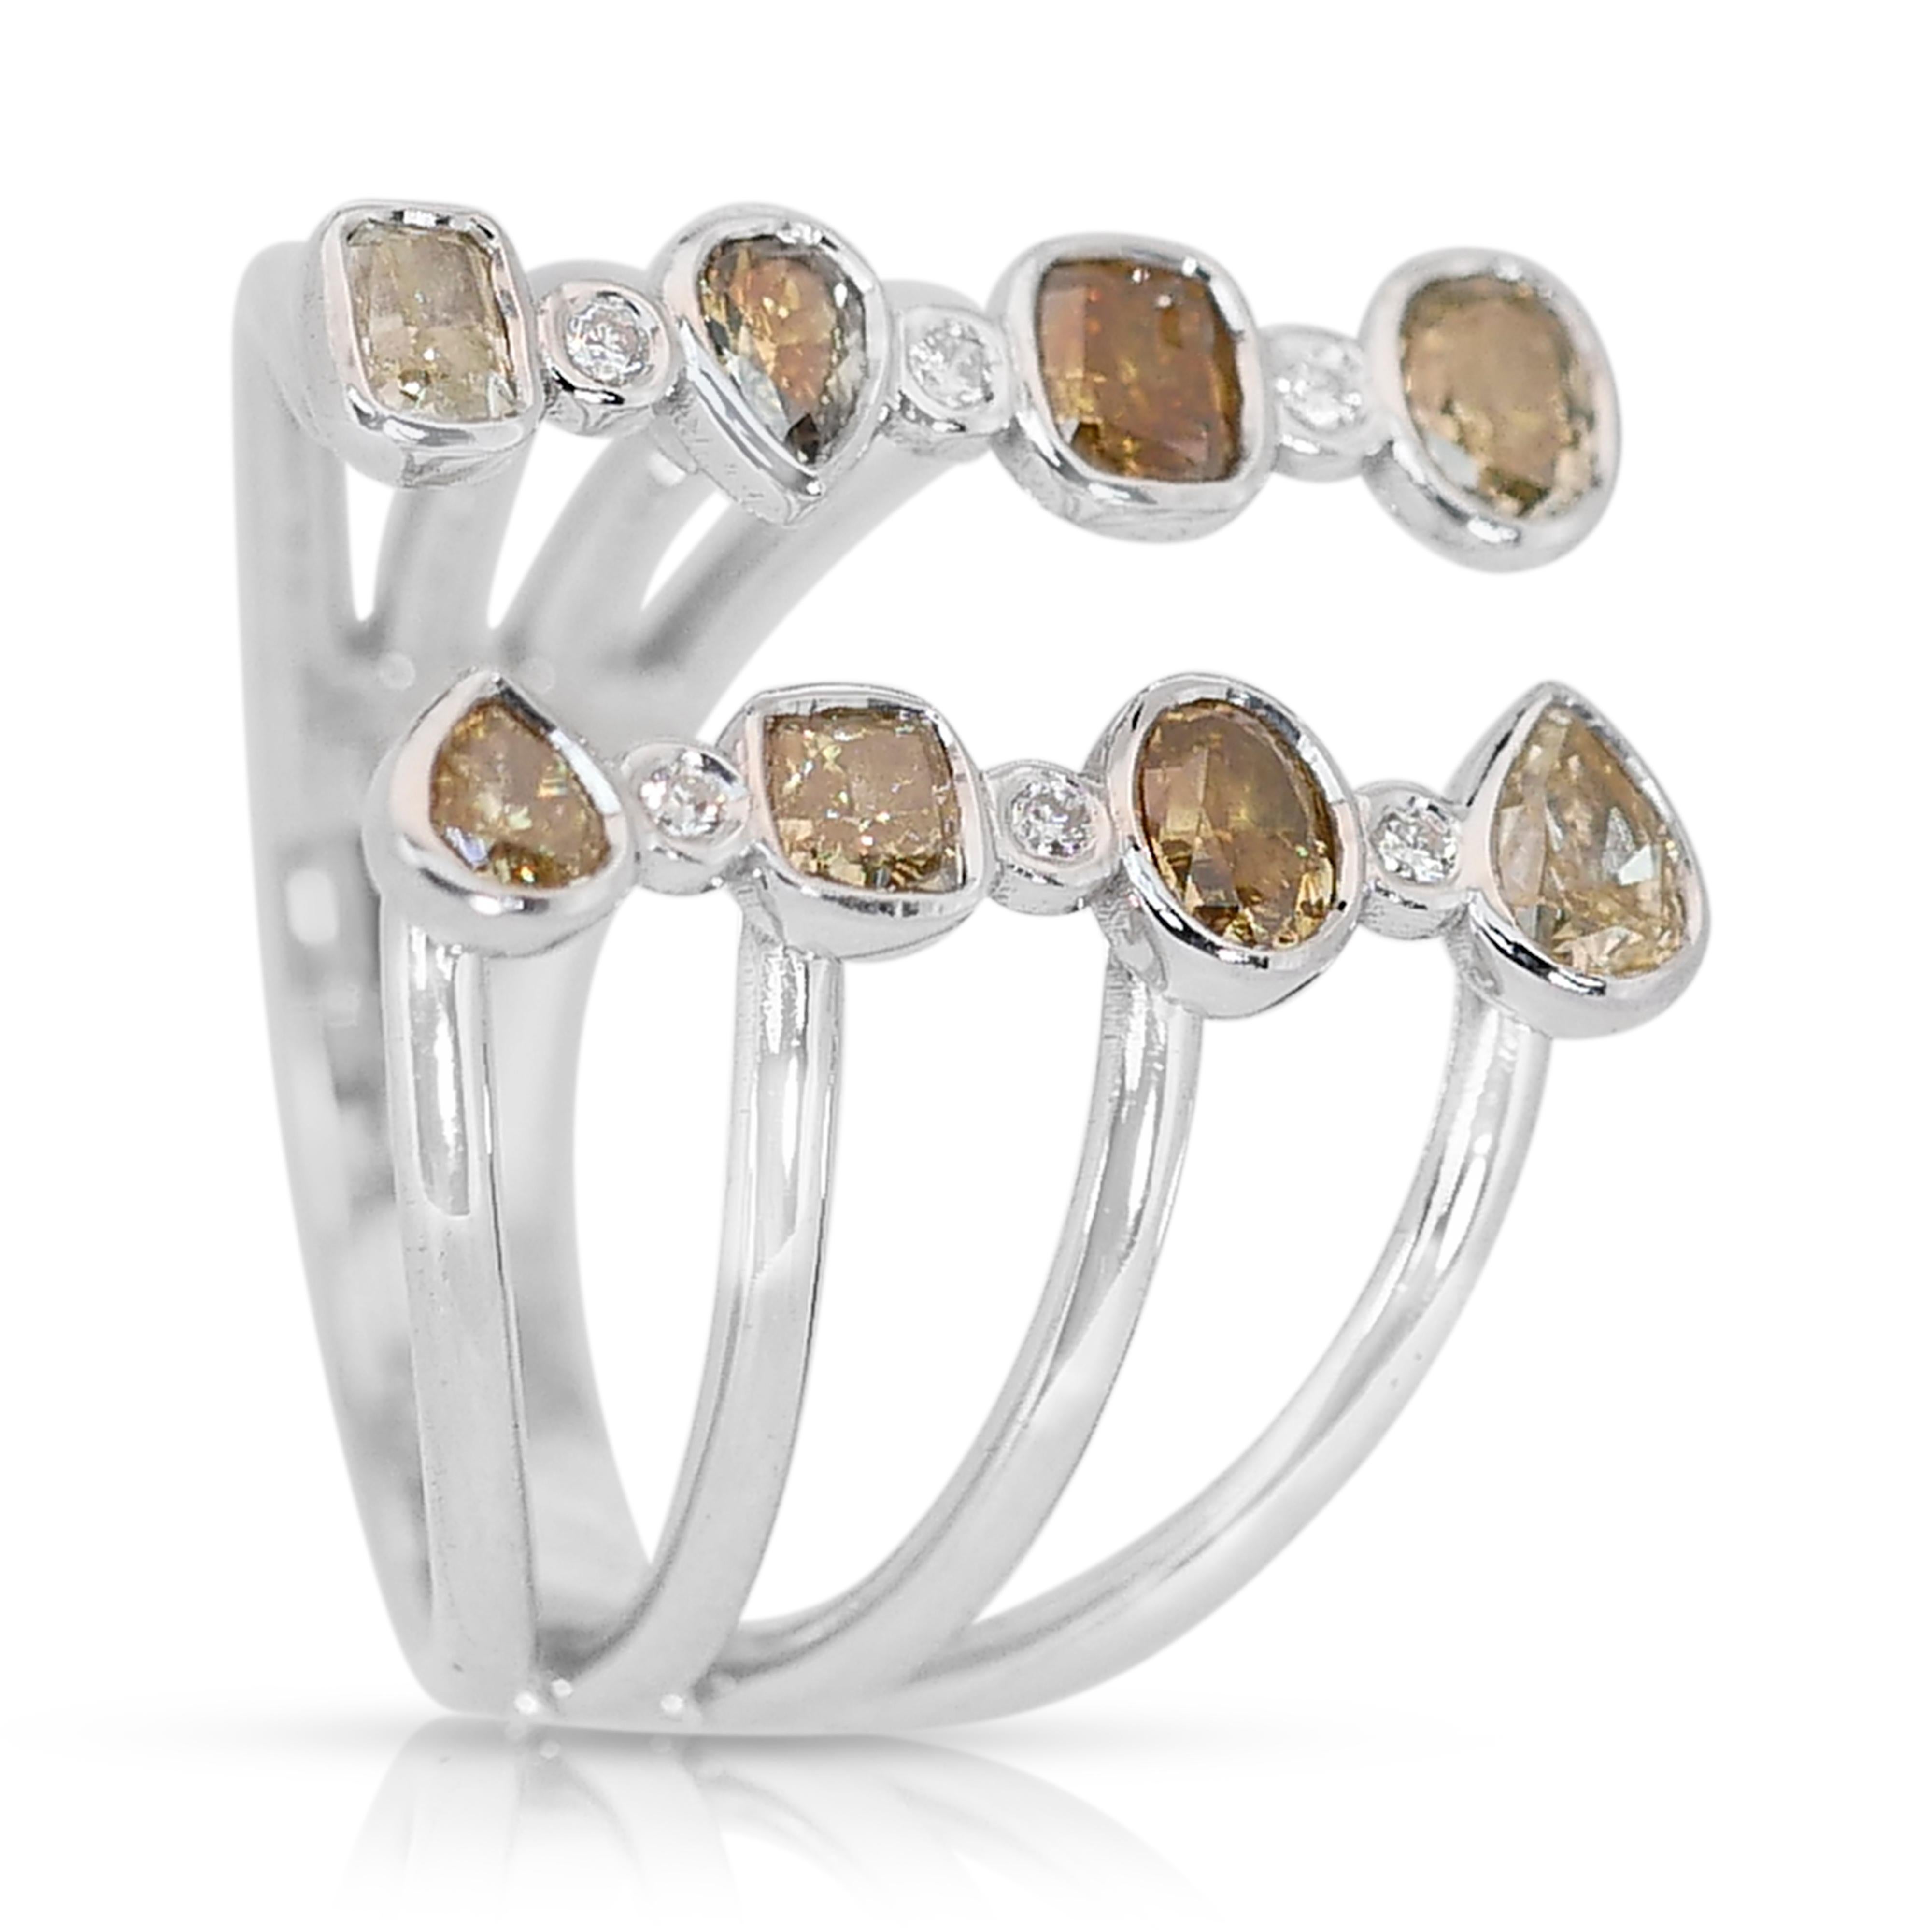 Brillant 14k Weißgold Fancy Colored Diamond Ring w/1,64 ct - AIG zertifiziert

Dieser einzigartige Ring aus 14 Karat Weißgold besteht aus einem Ensemble von 8 Diamanten in verschiedenen Formen mit insgesamt 1,52 Karat. Die 8 seitlichen Diamanten,